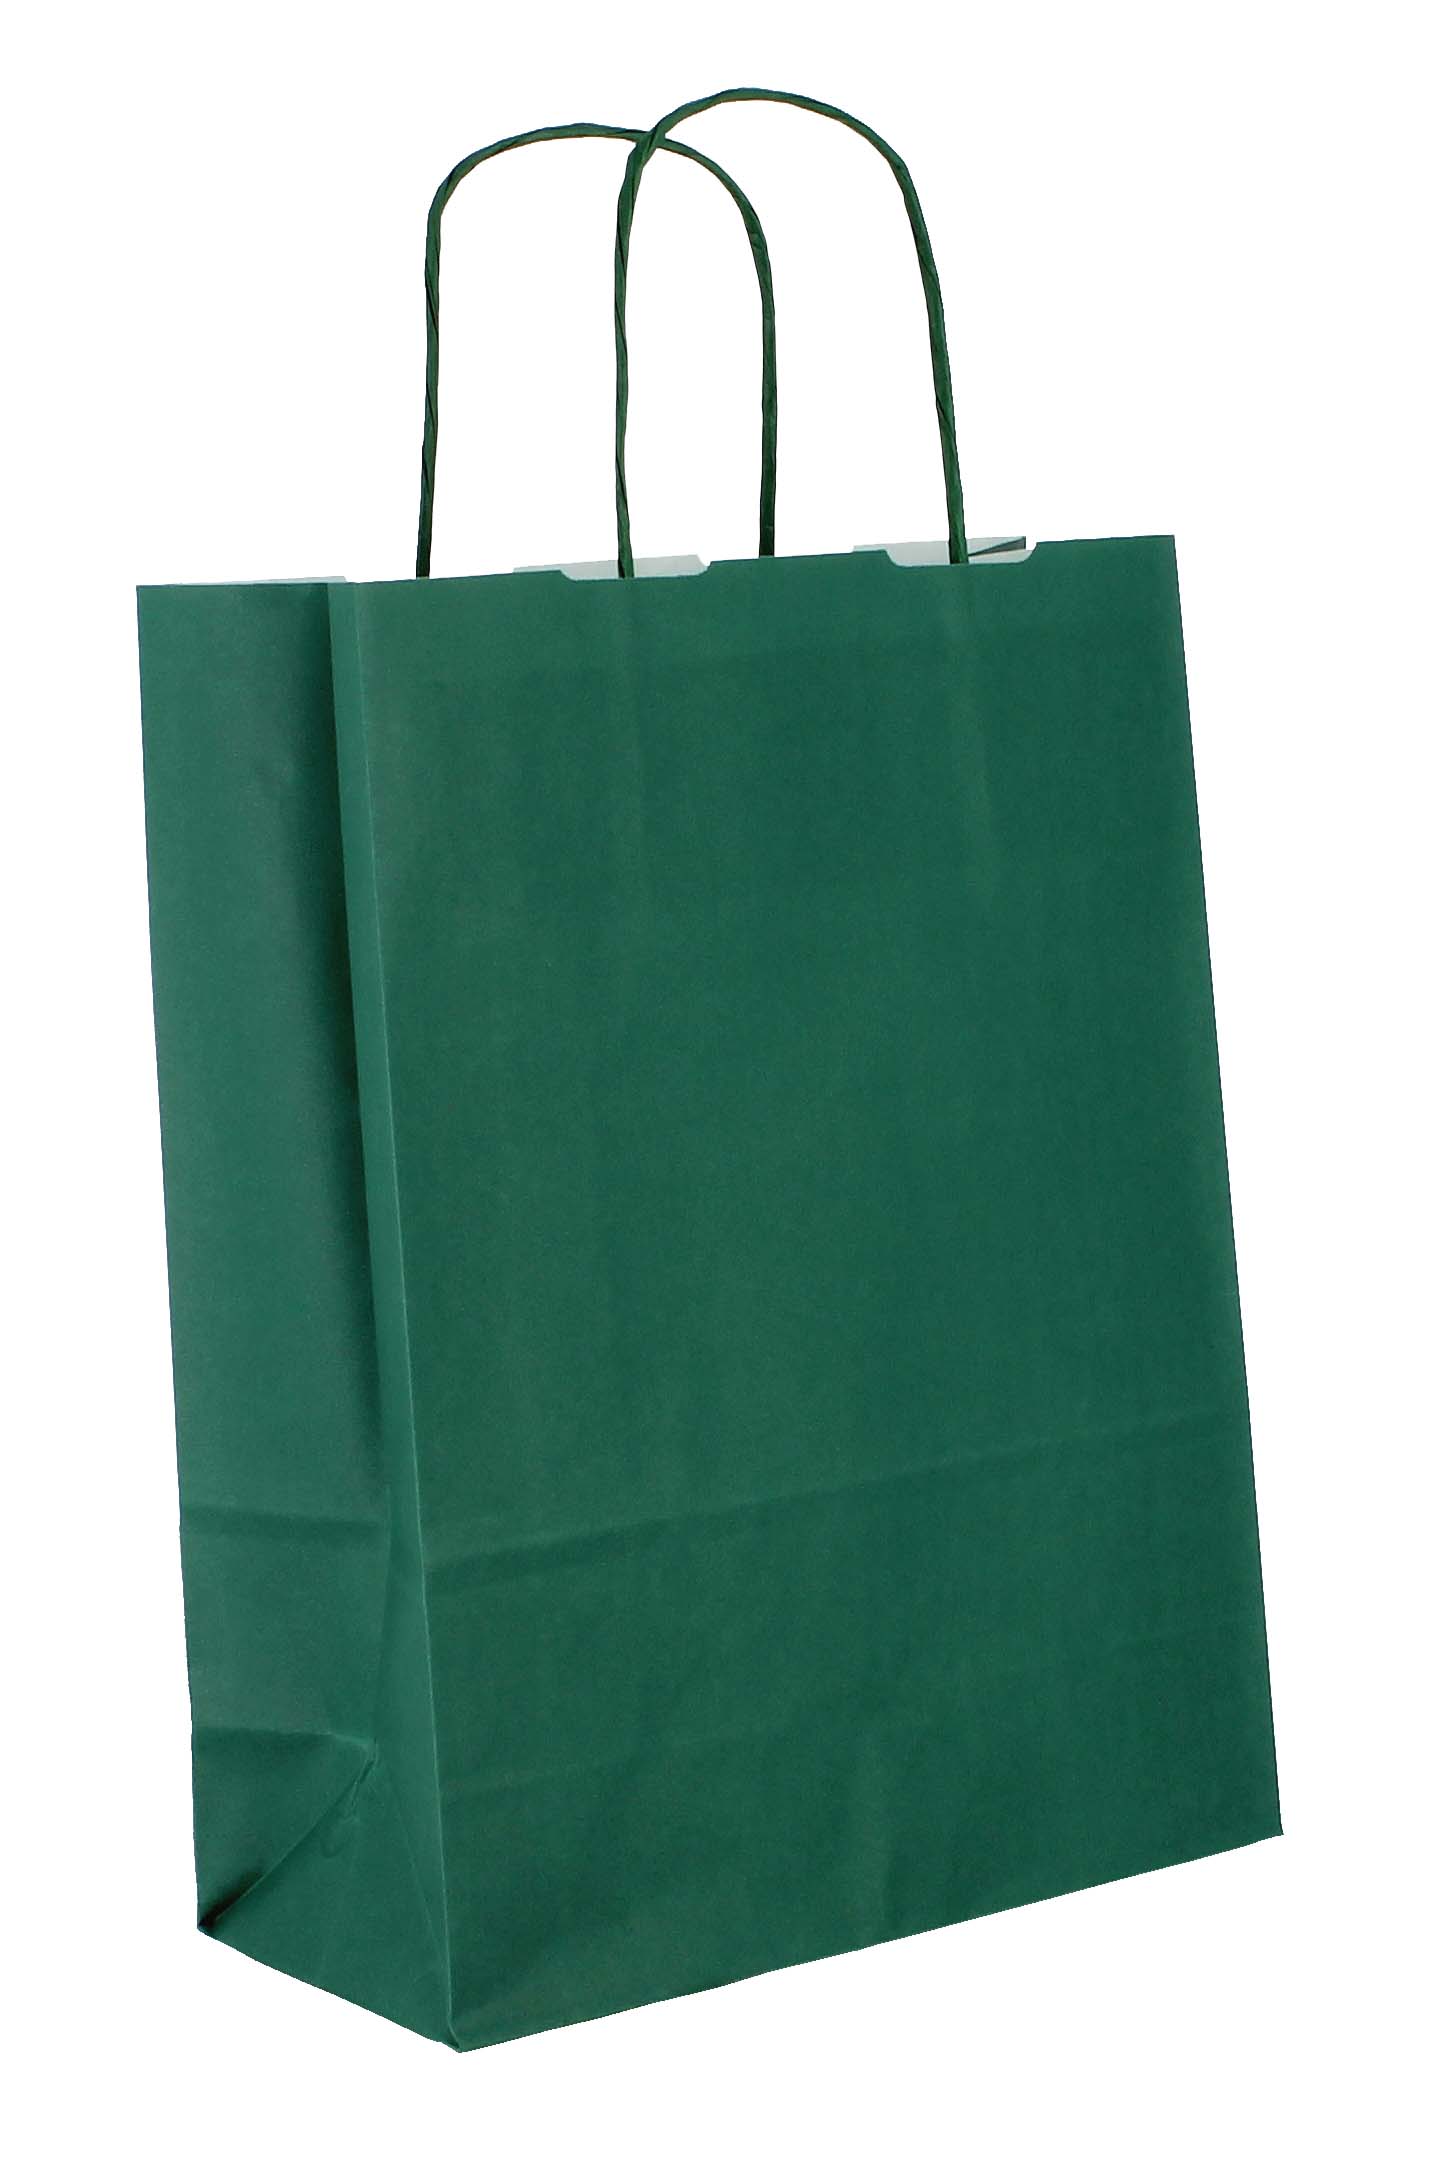 Papiertasche VERONA, Farbe dunkelgrün